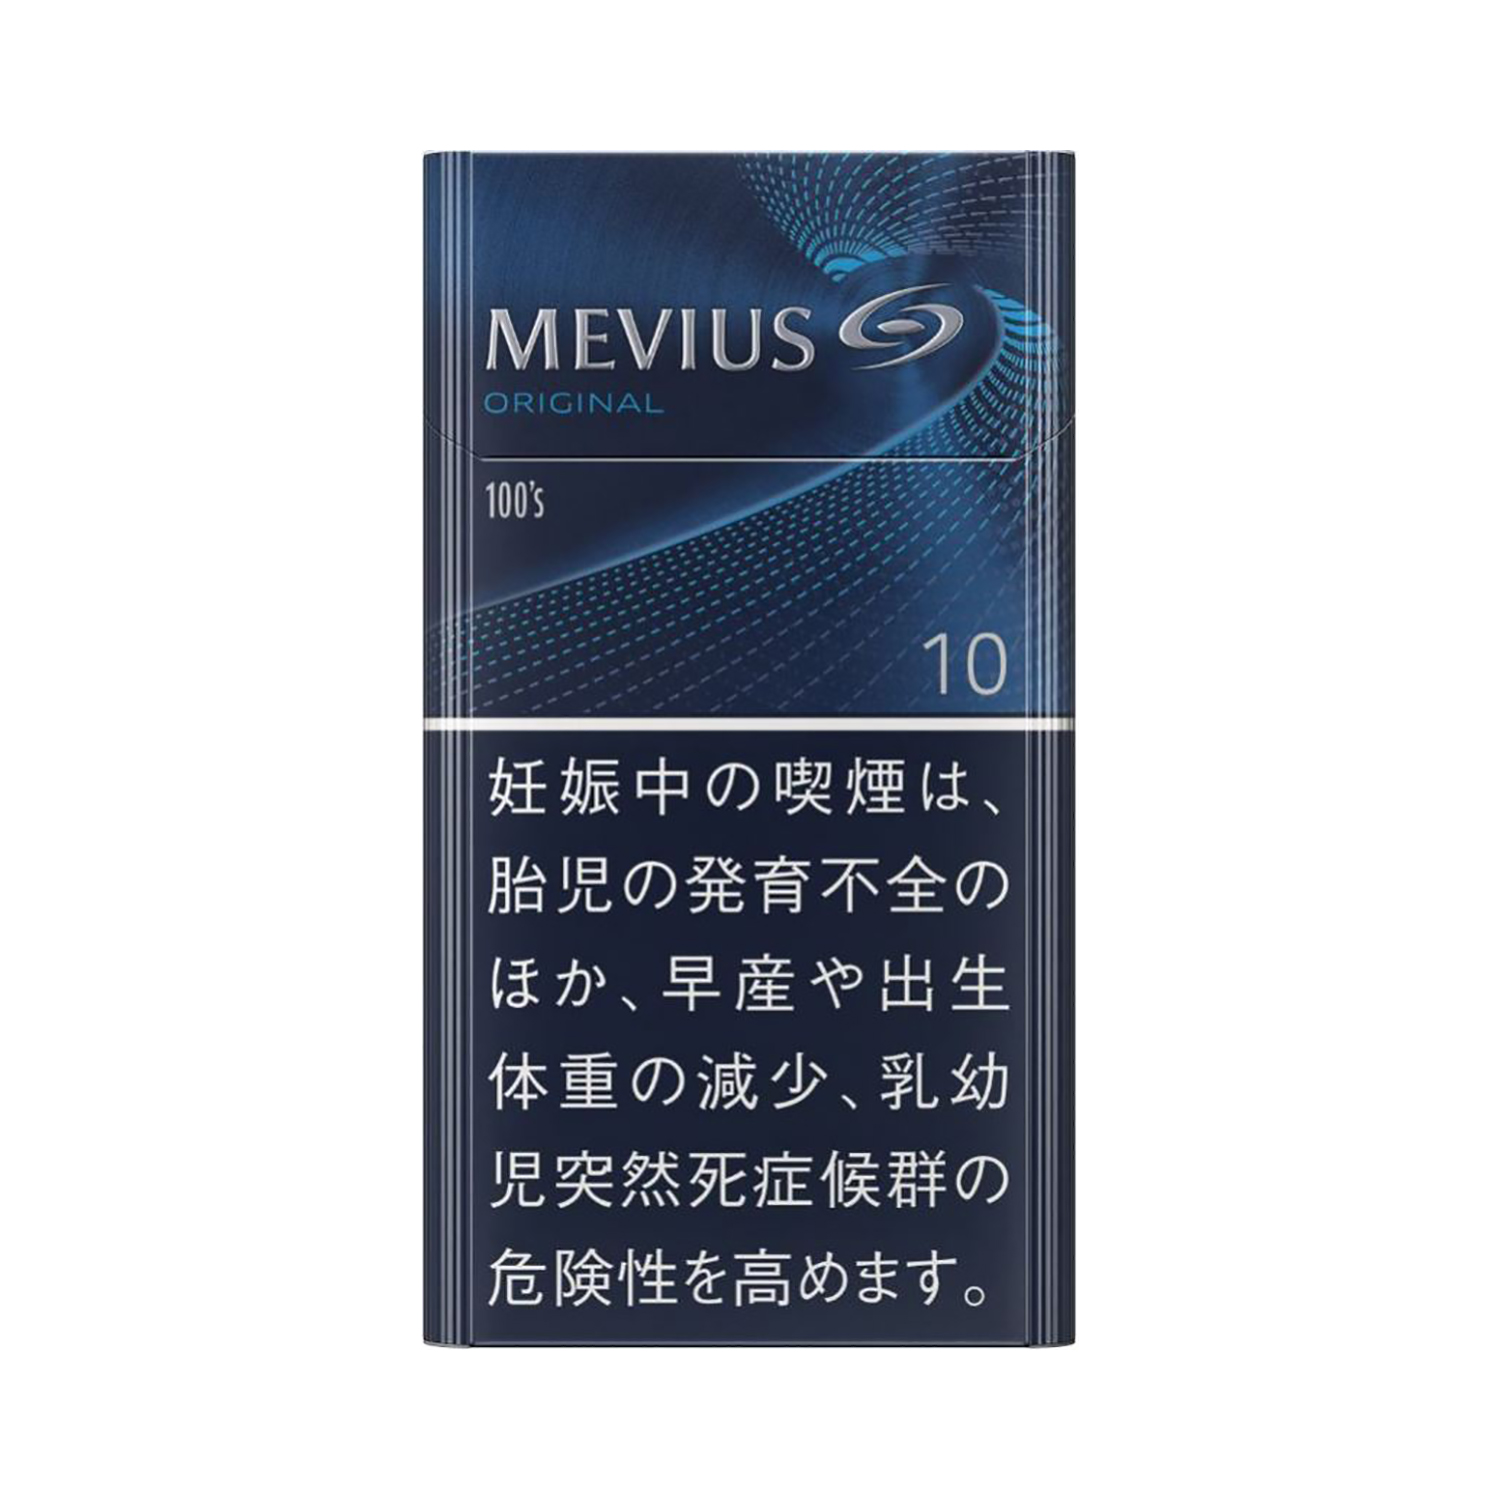 メビウス 100's ボックス / タール:10mg  ニコチン:0.8mg